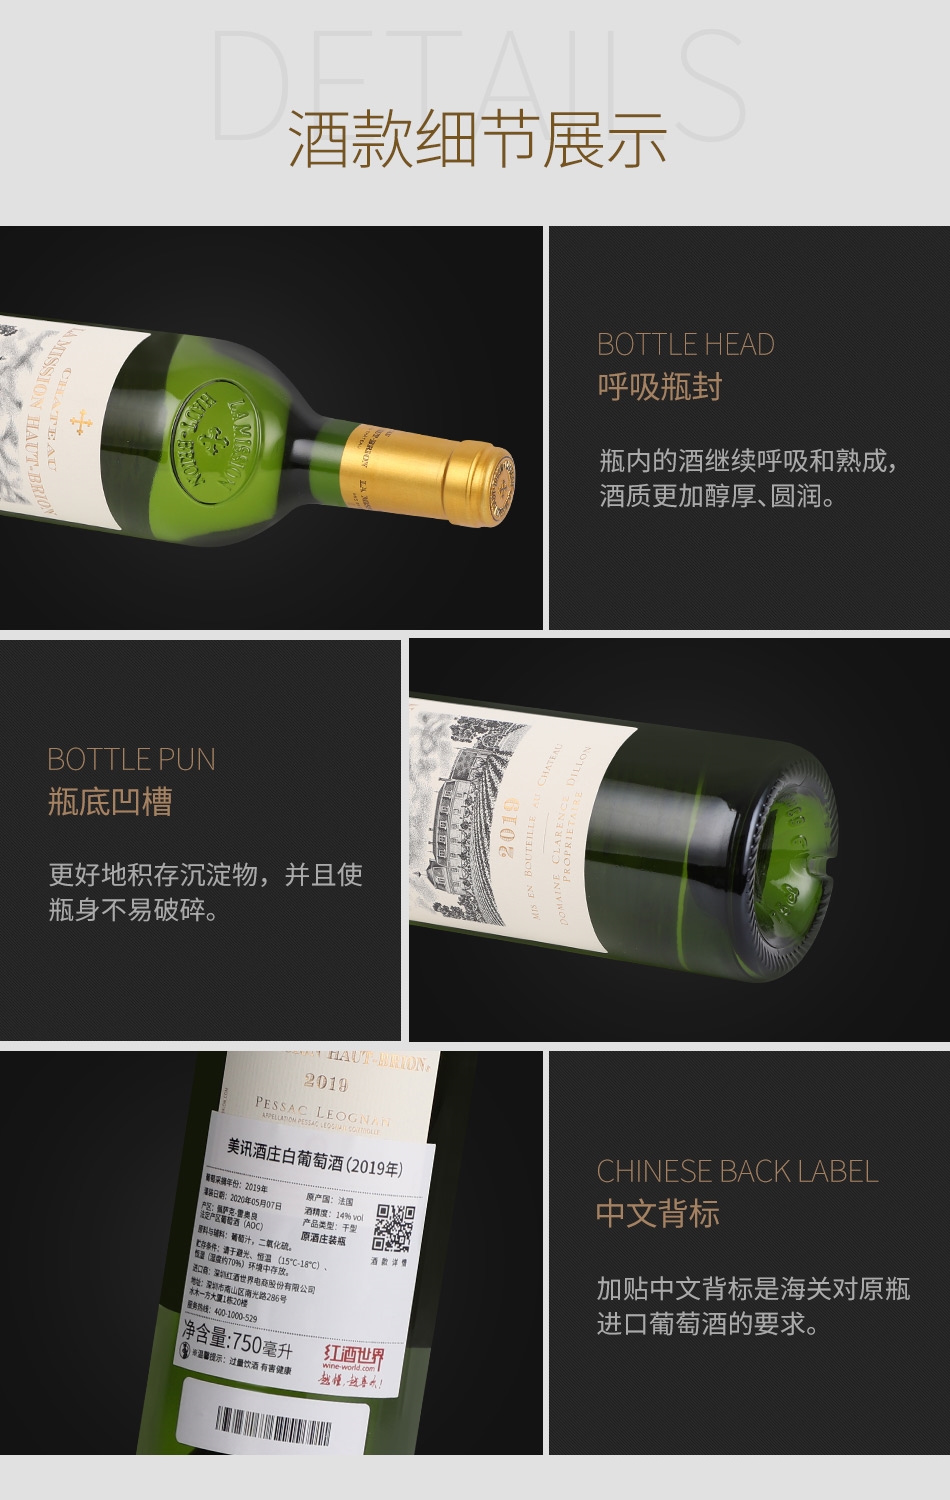 2019年美讯酒庄白葡萄酒